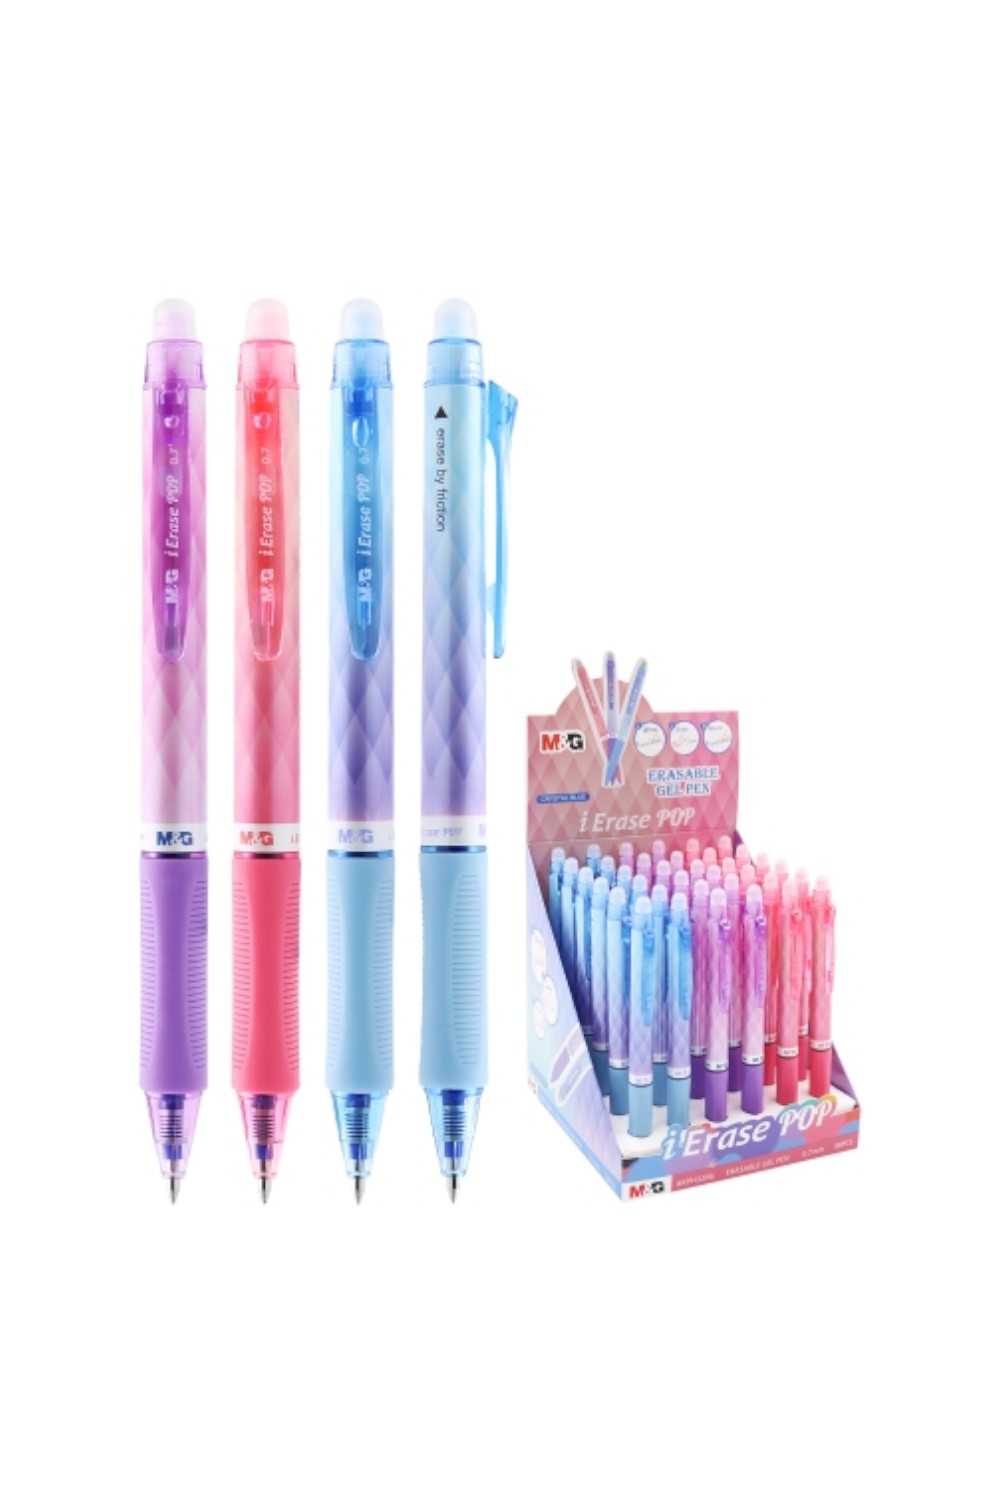 Στυλό που σβήνει Διάφορα Χρώματα 0.7 AKPH32R6 (Τυχαία επιλογή σχεδίου)